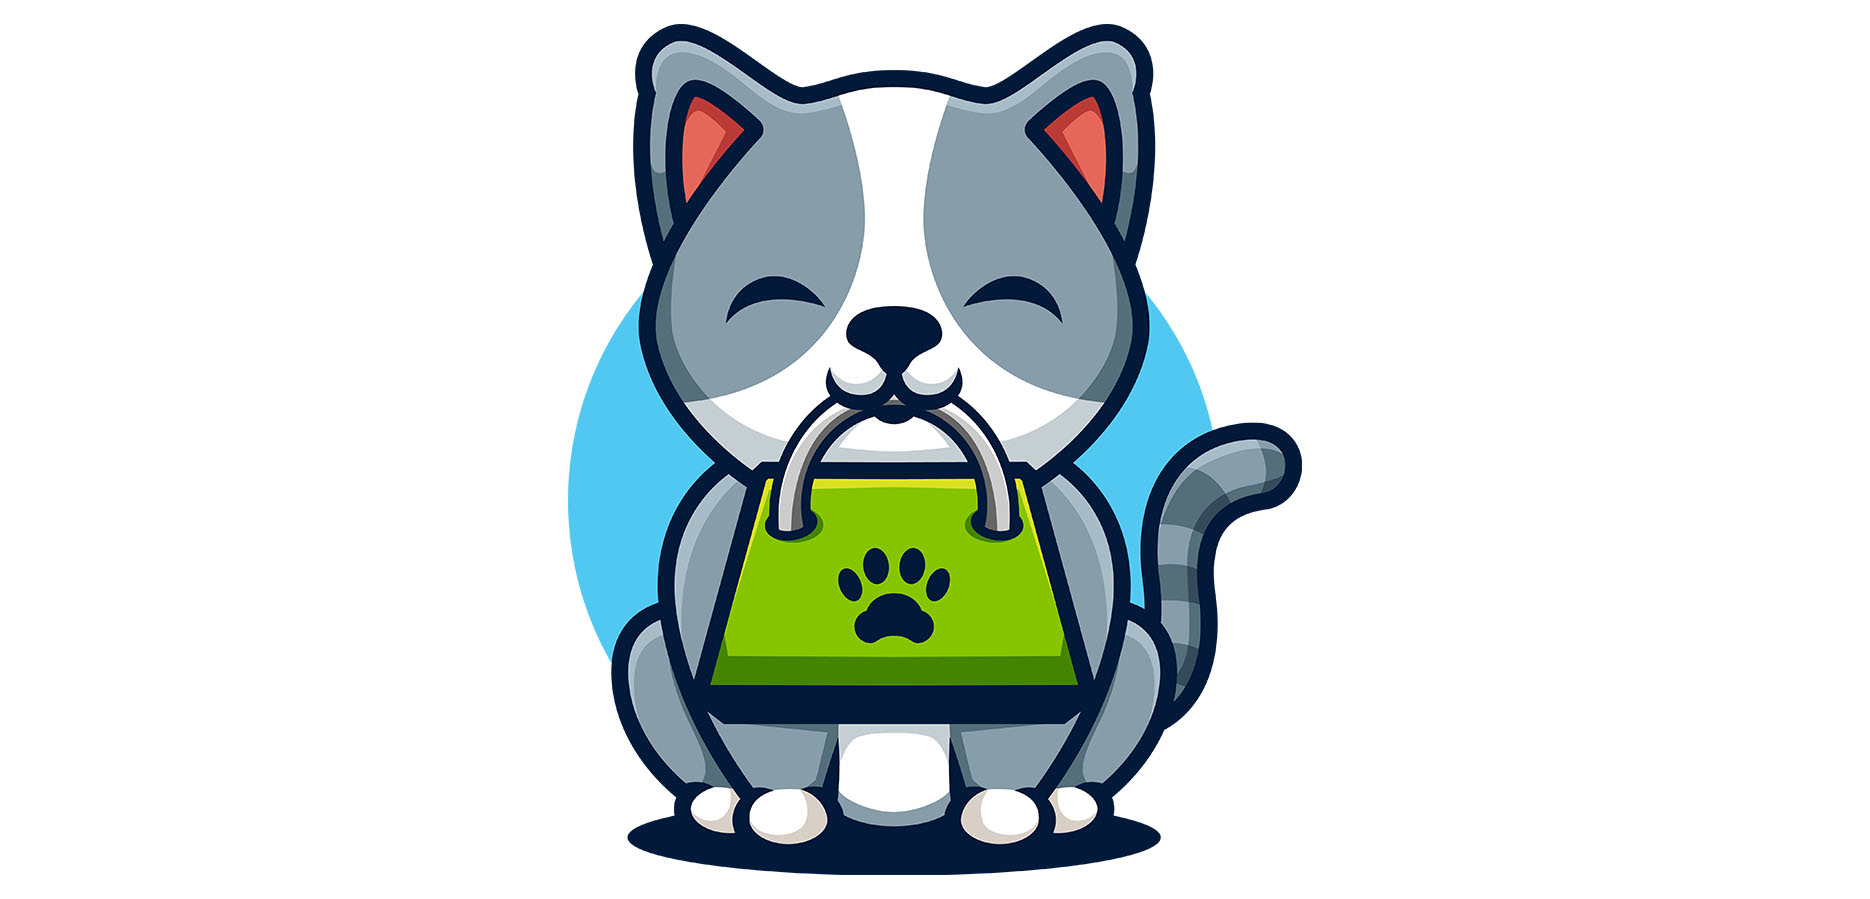 Cat Shopping Logo Free Download